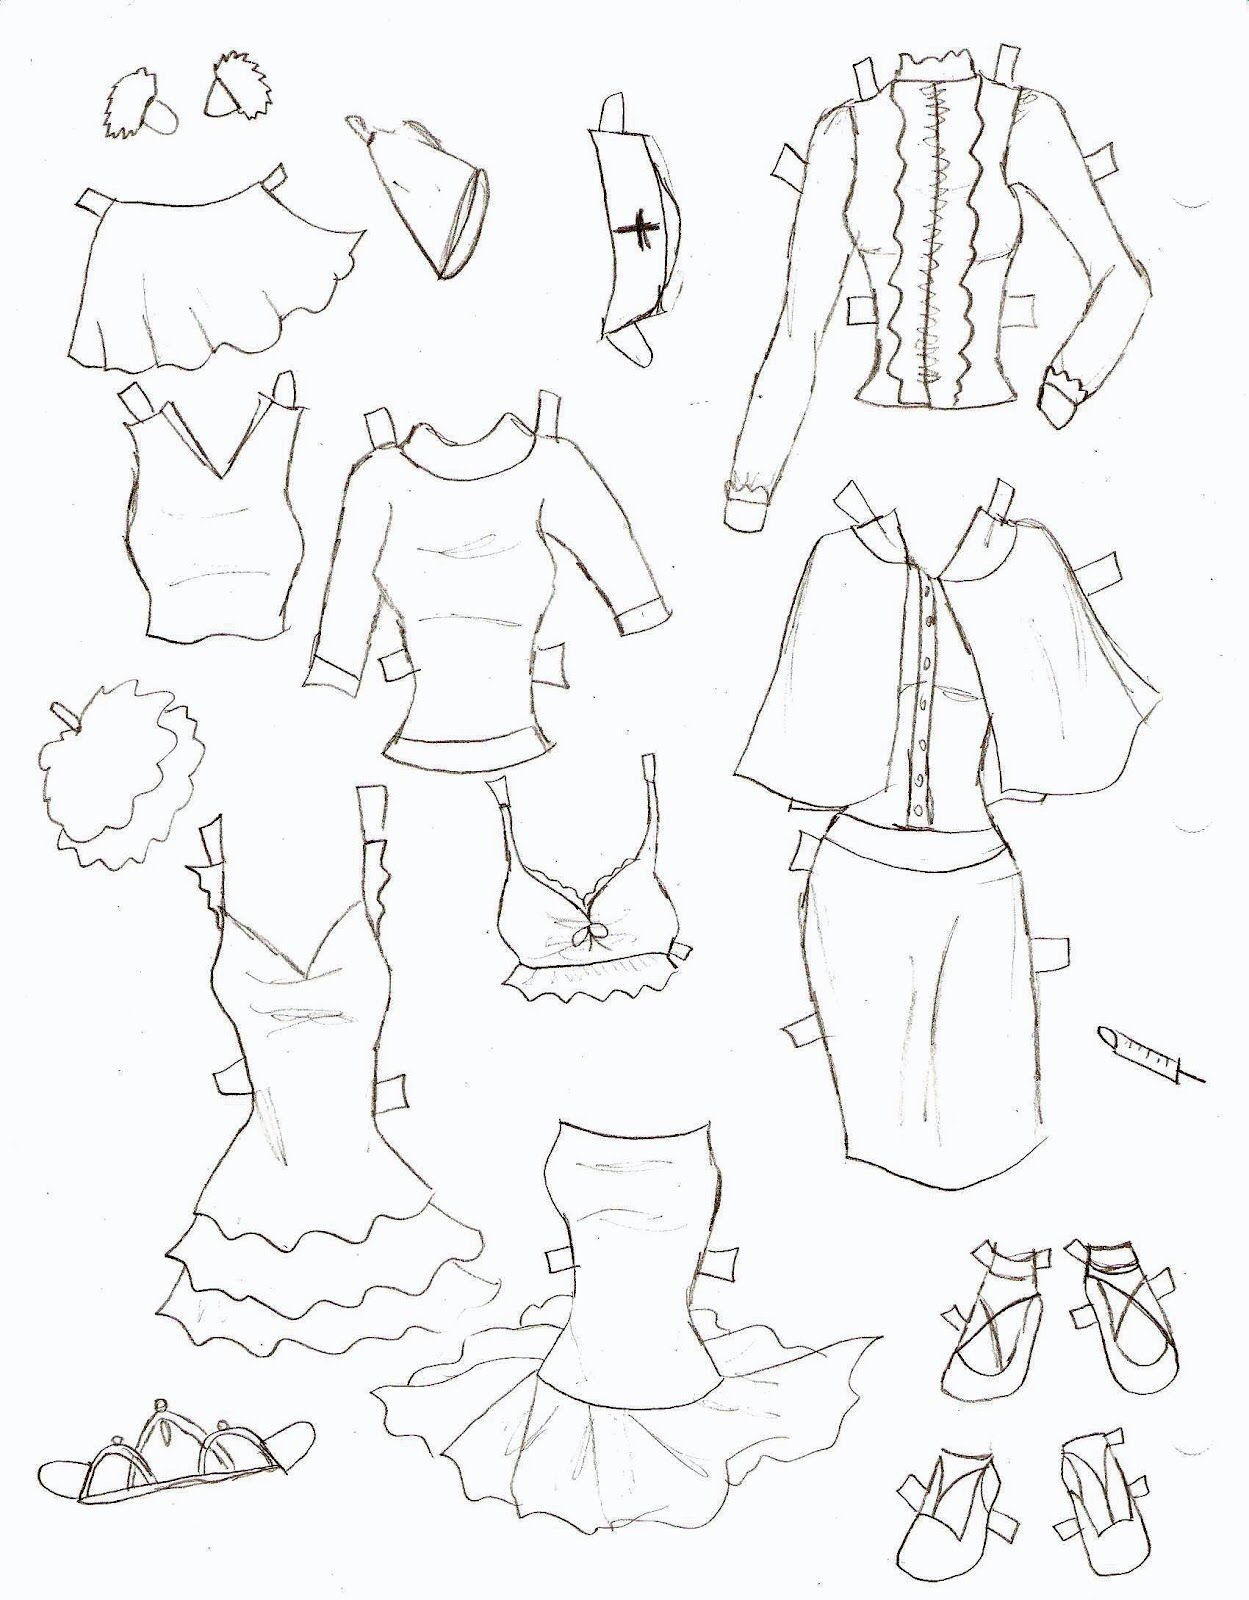 Как нарисовать девушку в платье 19 века карандашом поэтапно